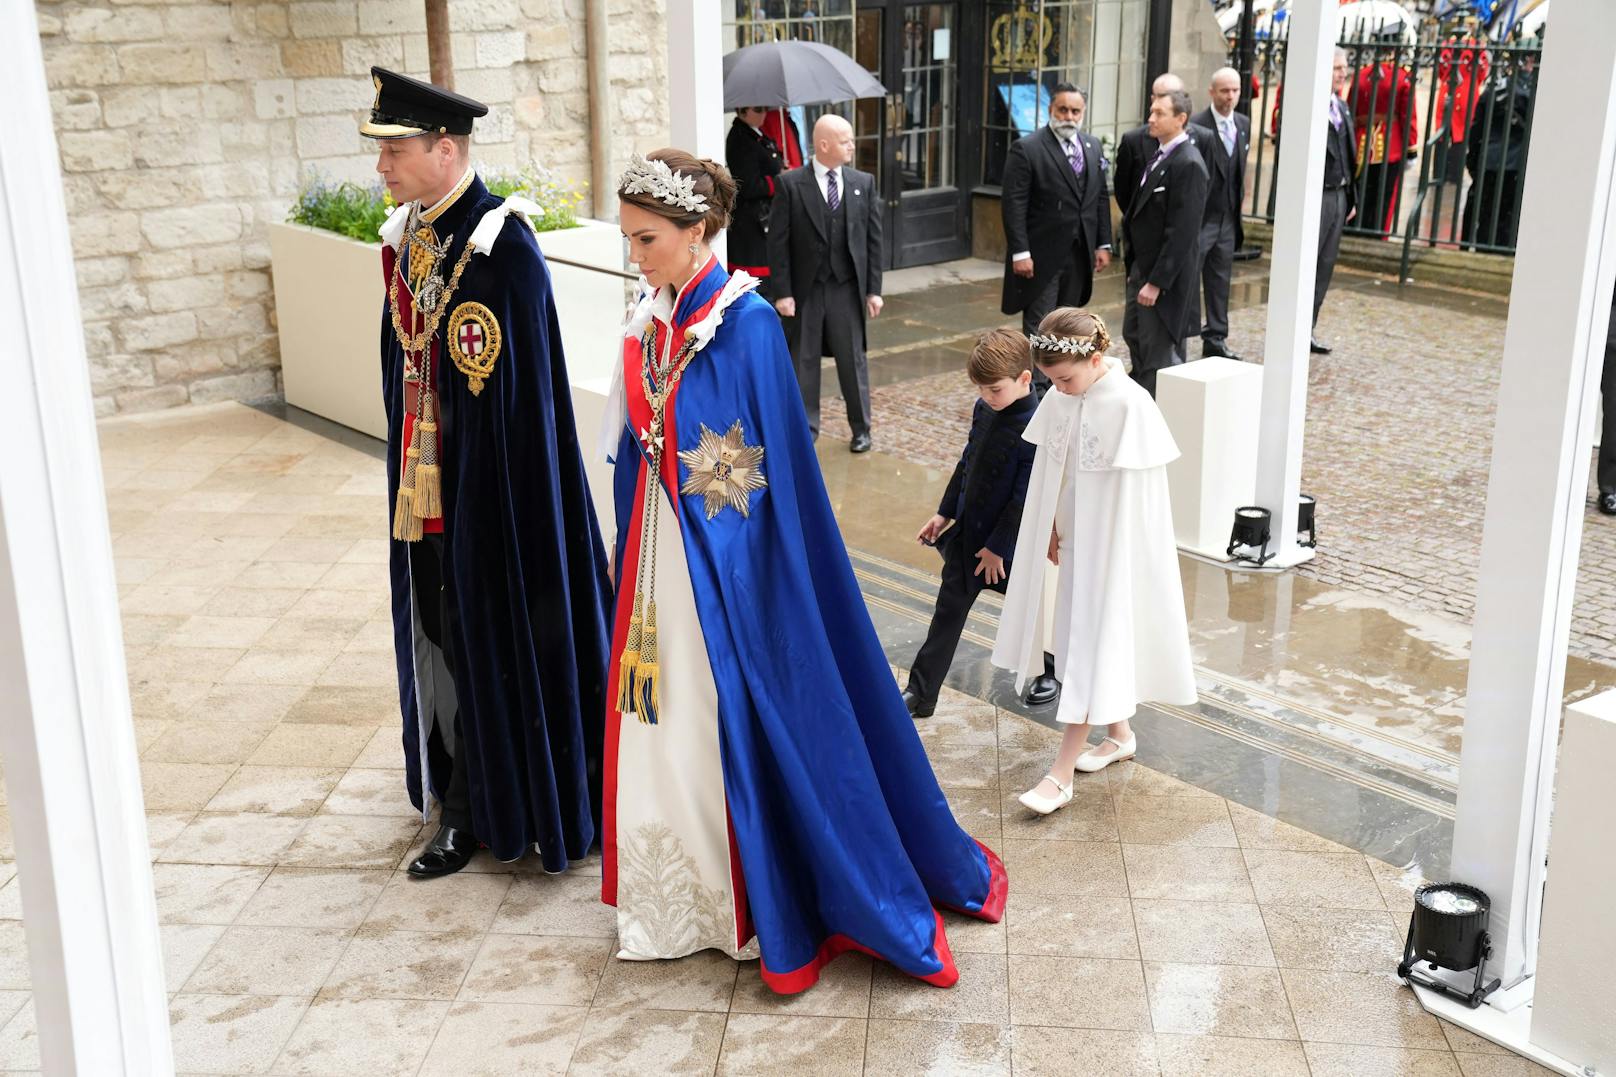 An erster Stelle der Thronfolge steht der Erstgeborene des neuen Königs, Prinz William, gefolgt von dessen ältestem Sohn Prinz George.